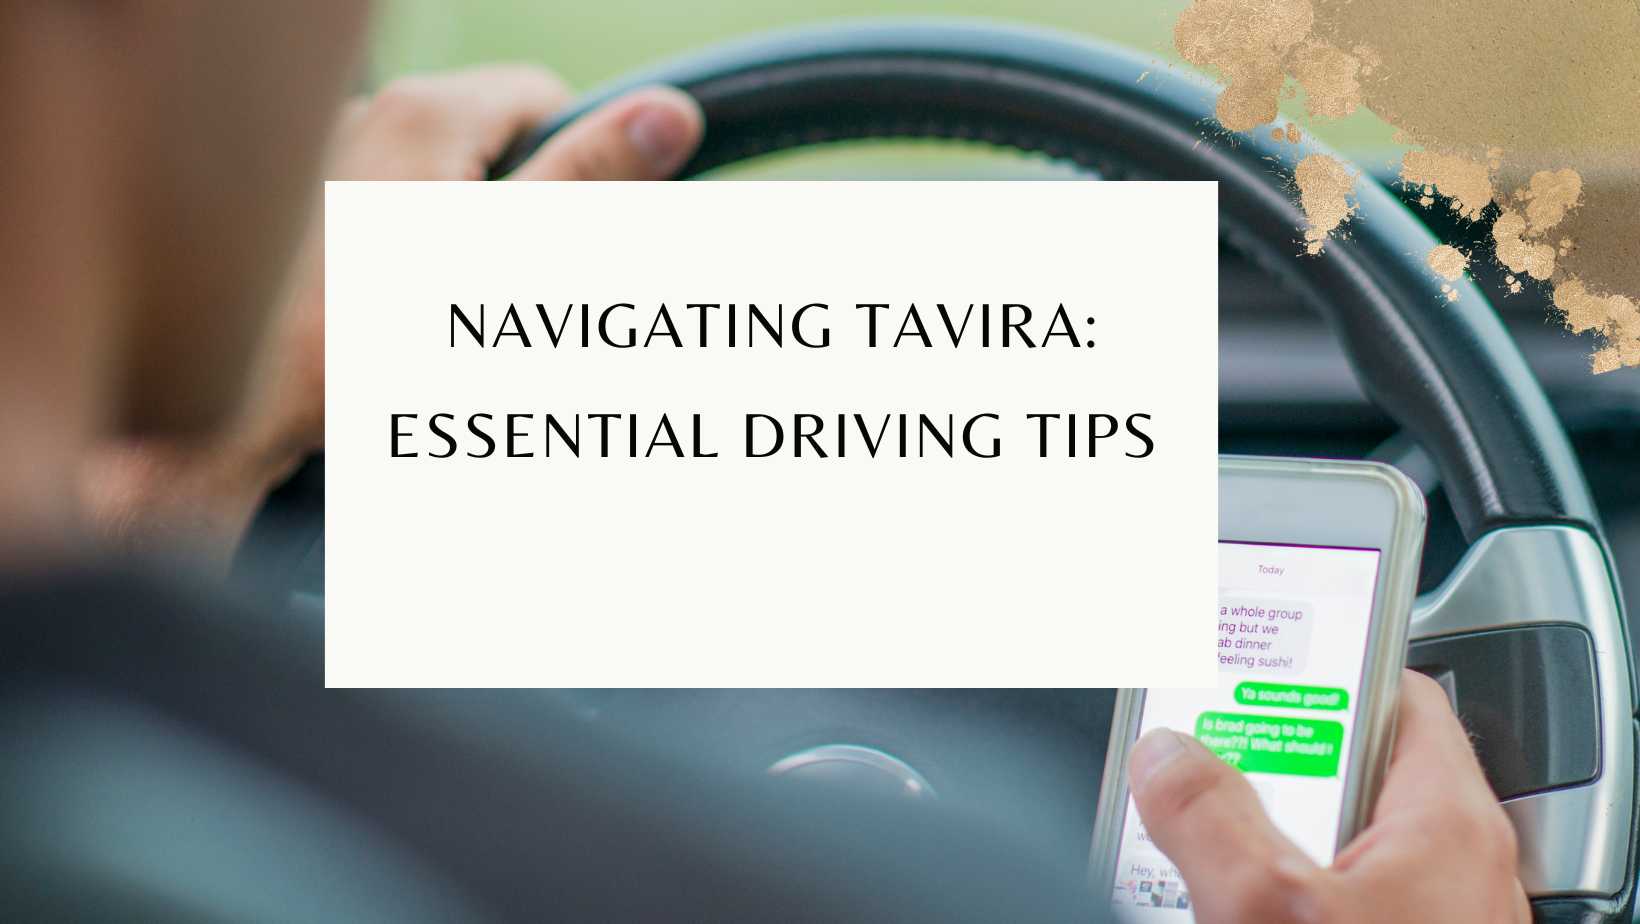 Tavira driving tips and regulations 2